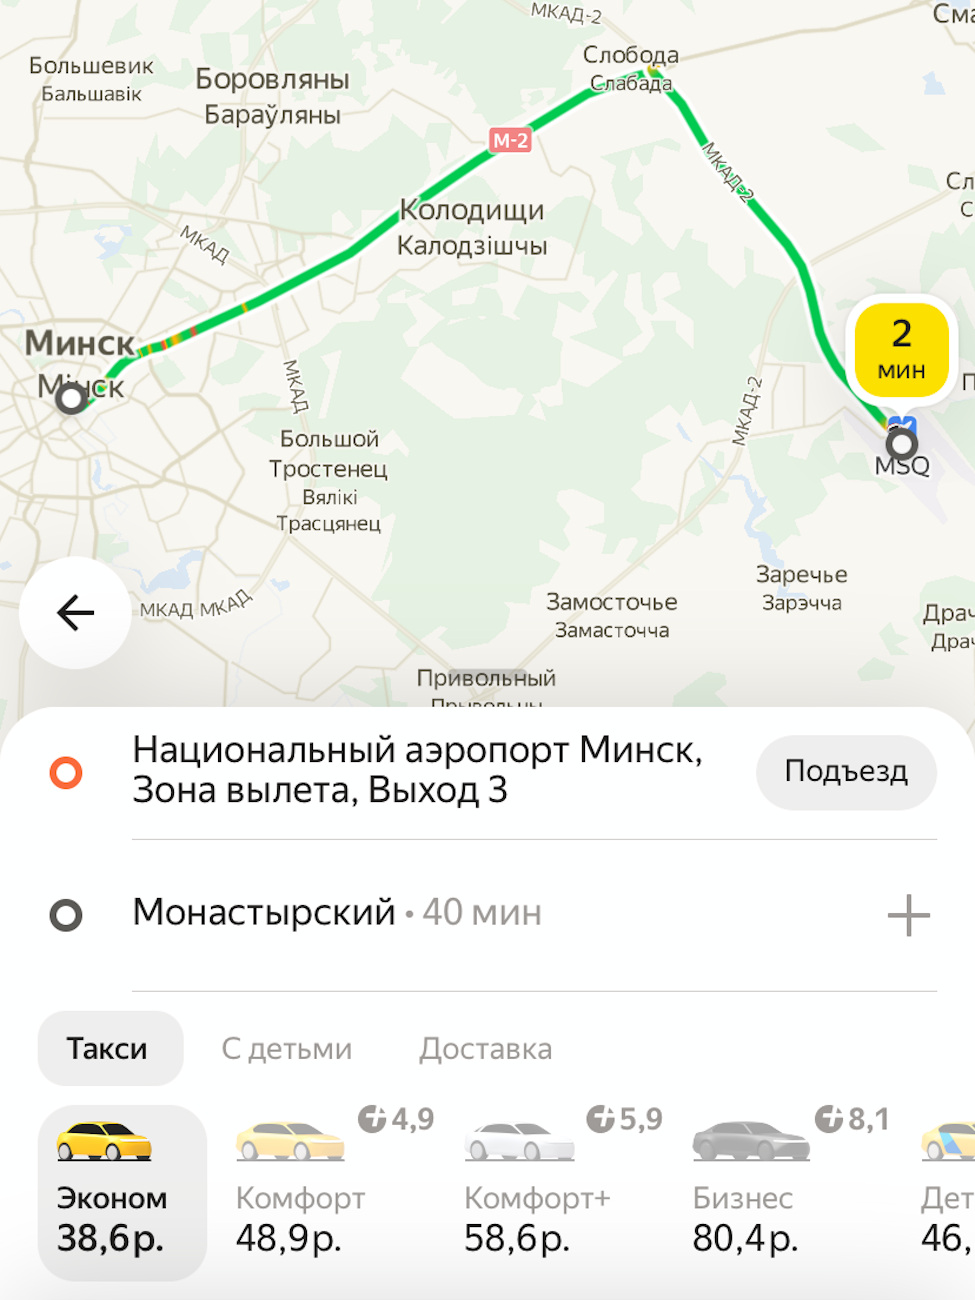 Цены на такси в Минске